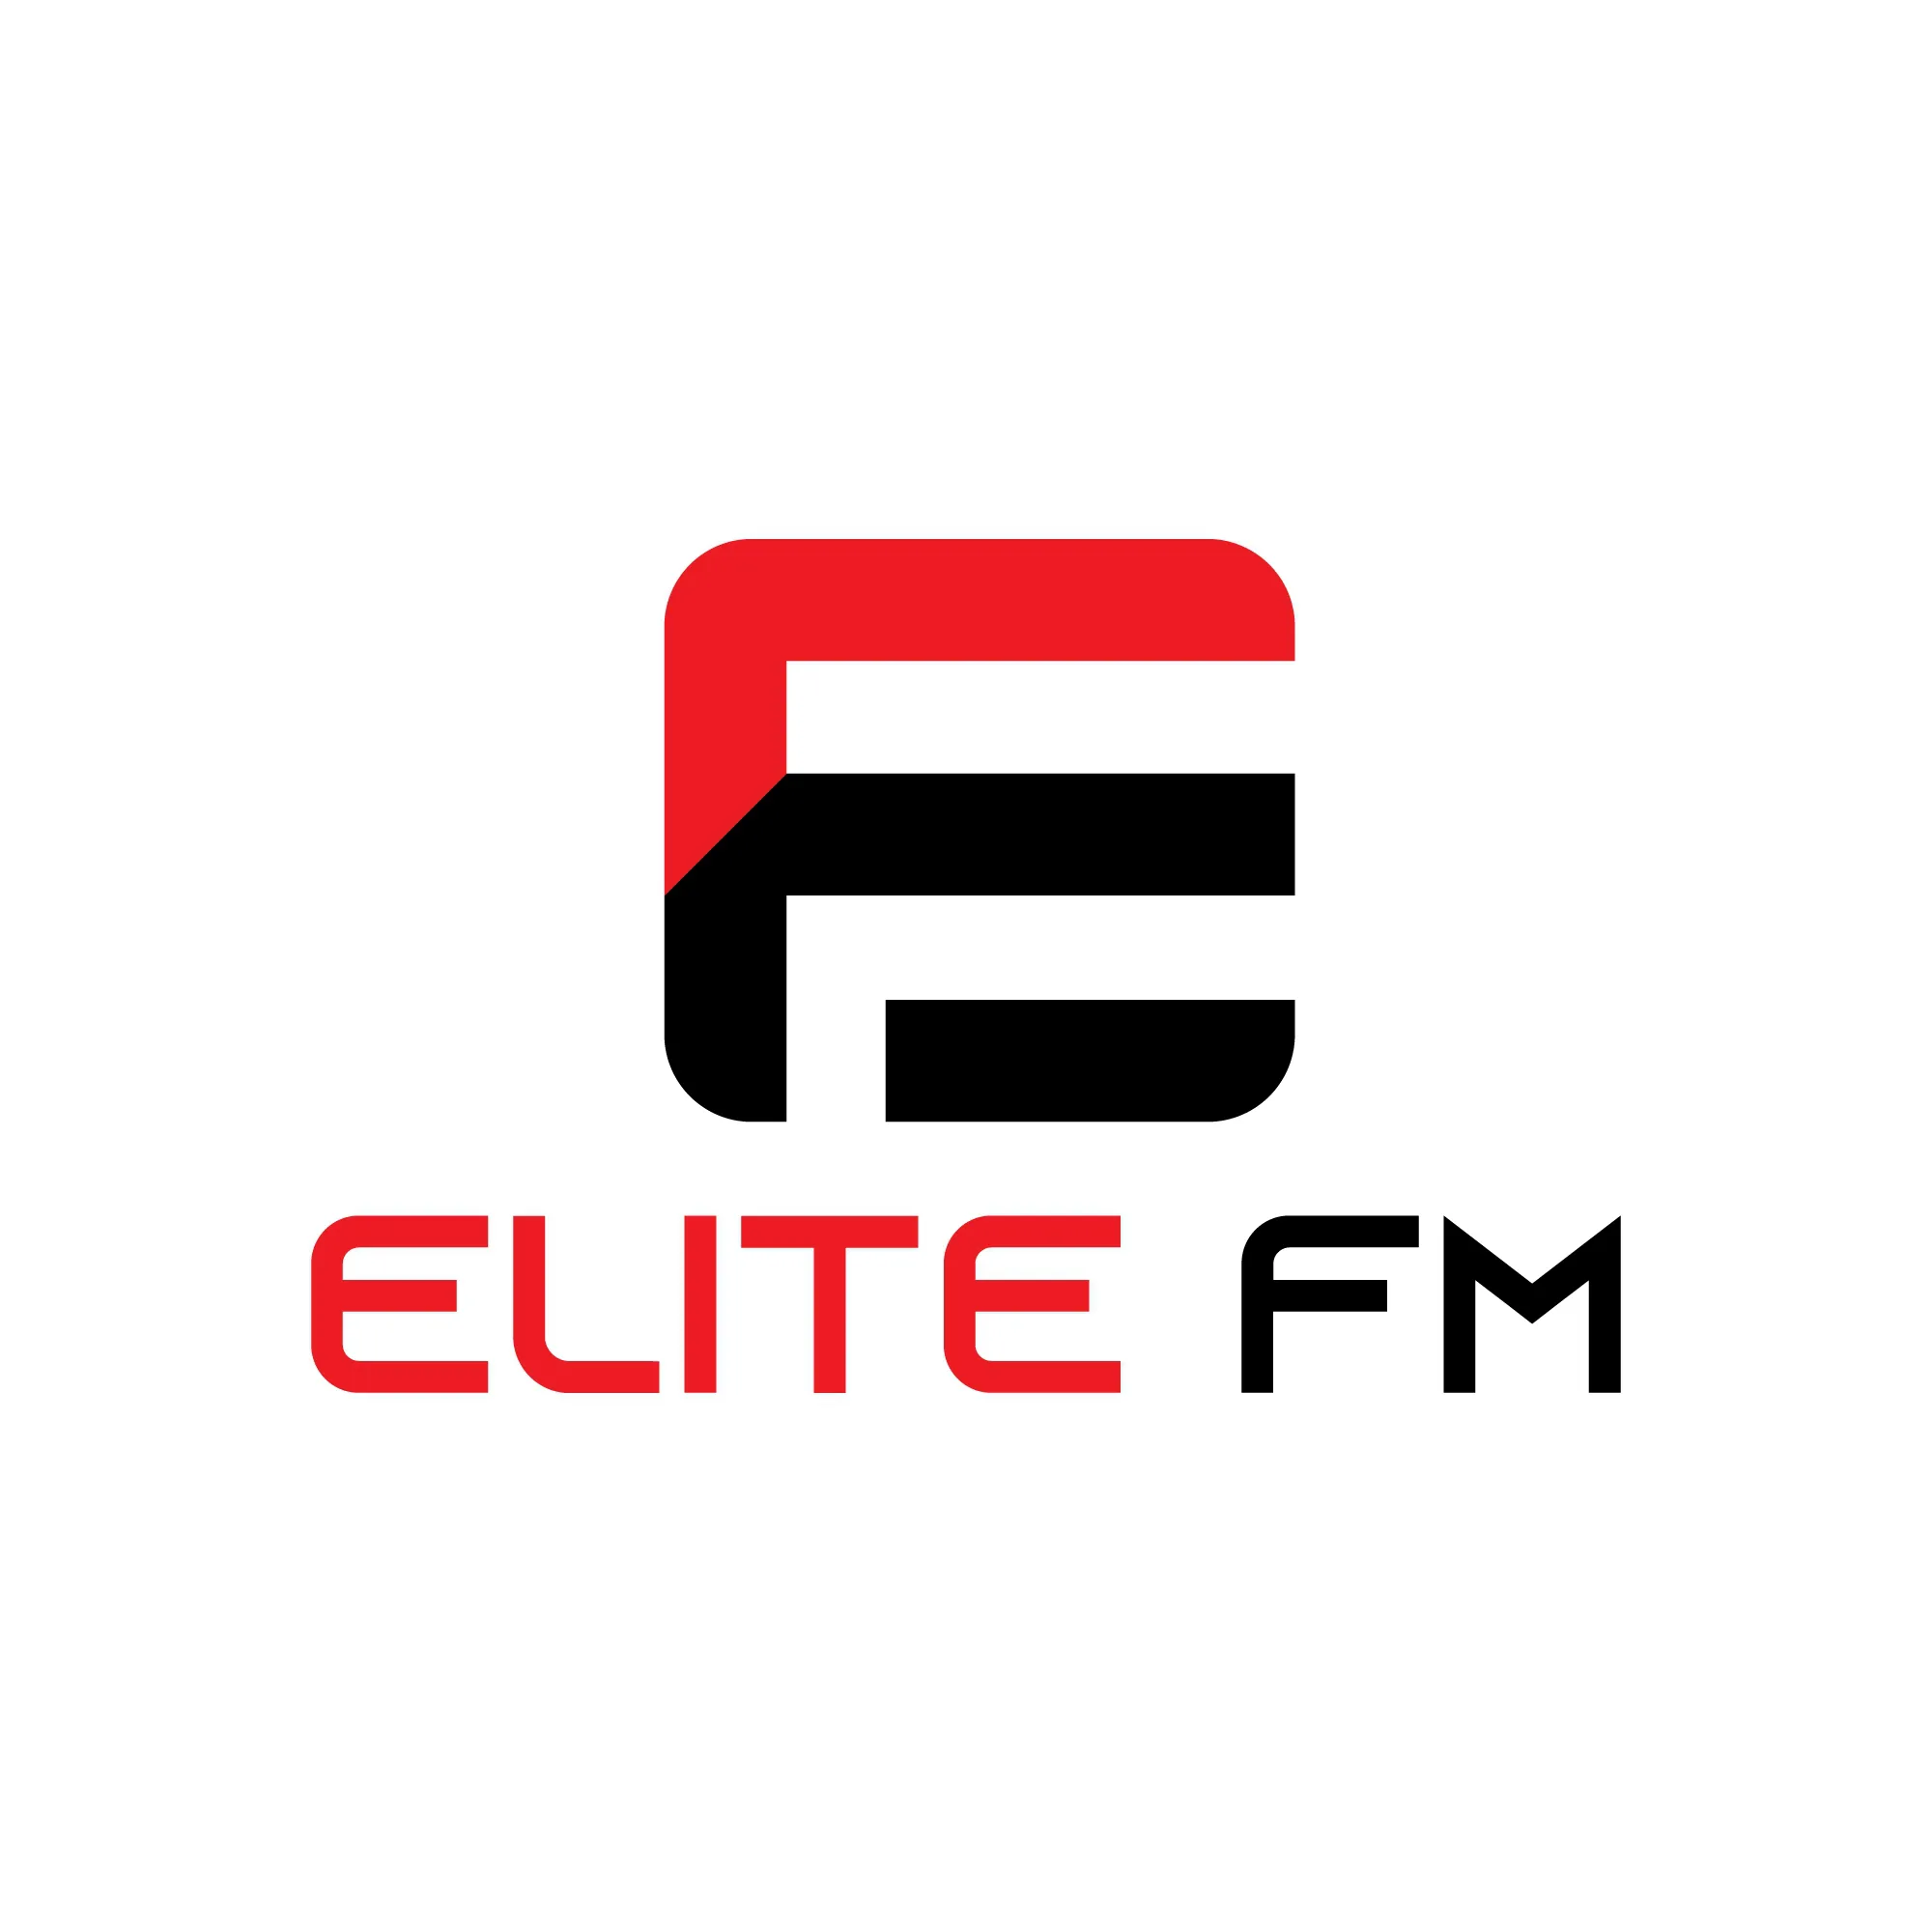 Elite FMbengali-radio